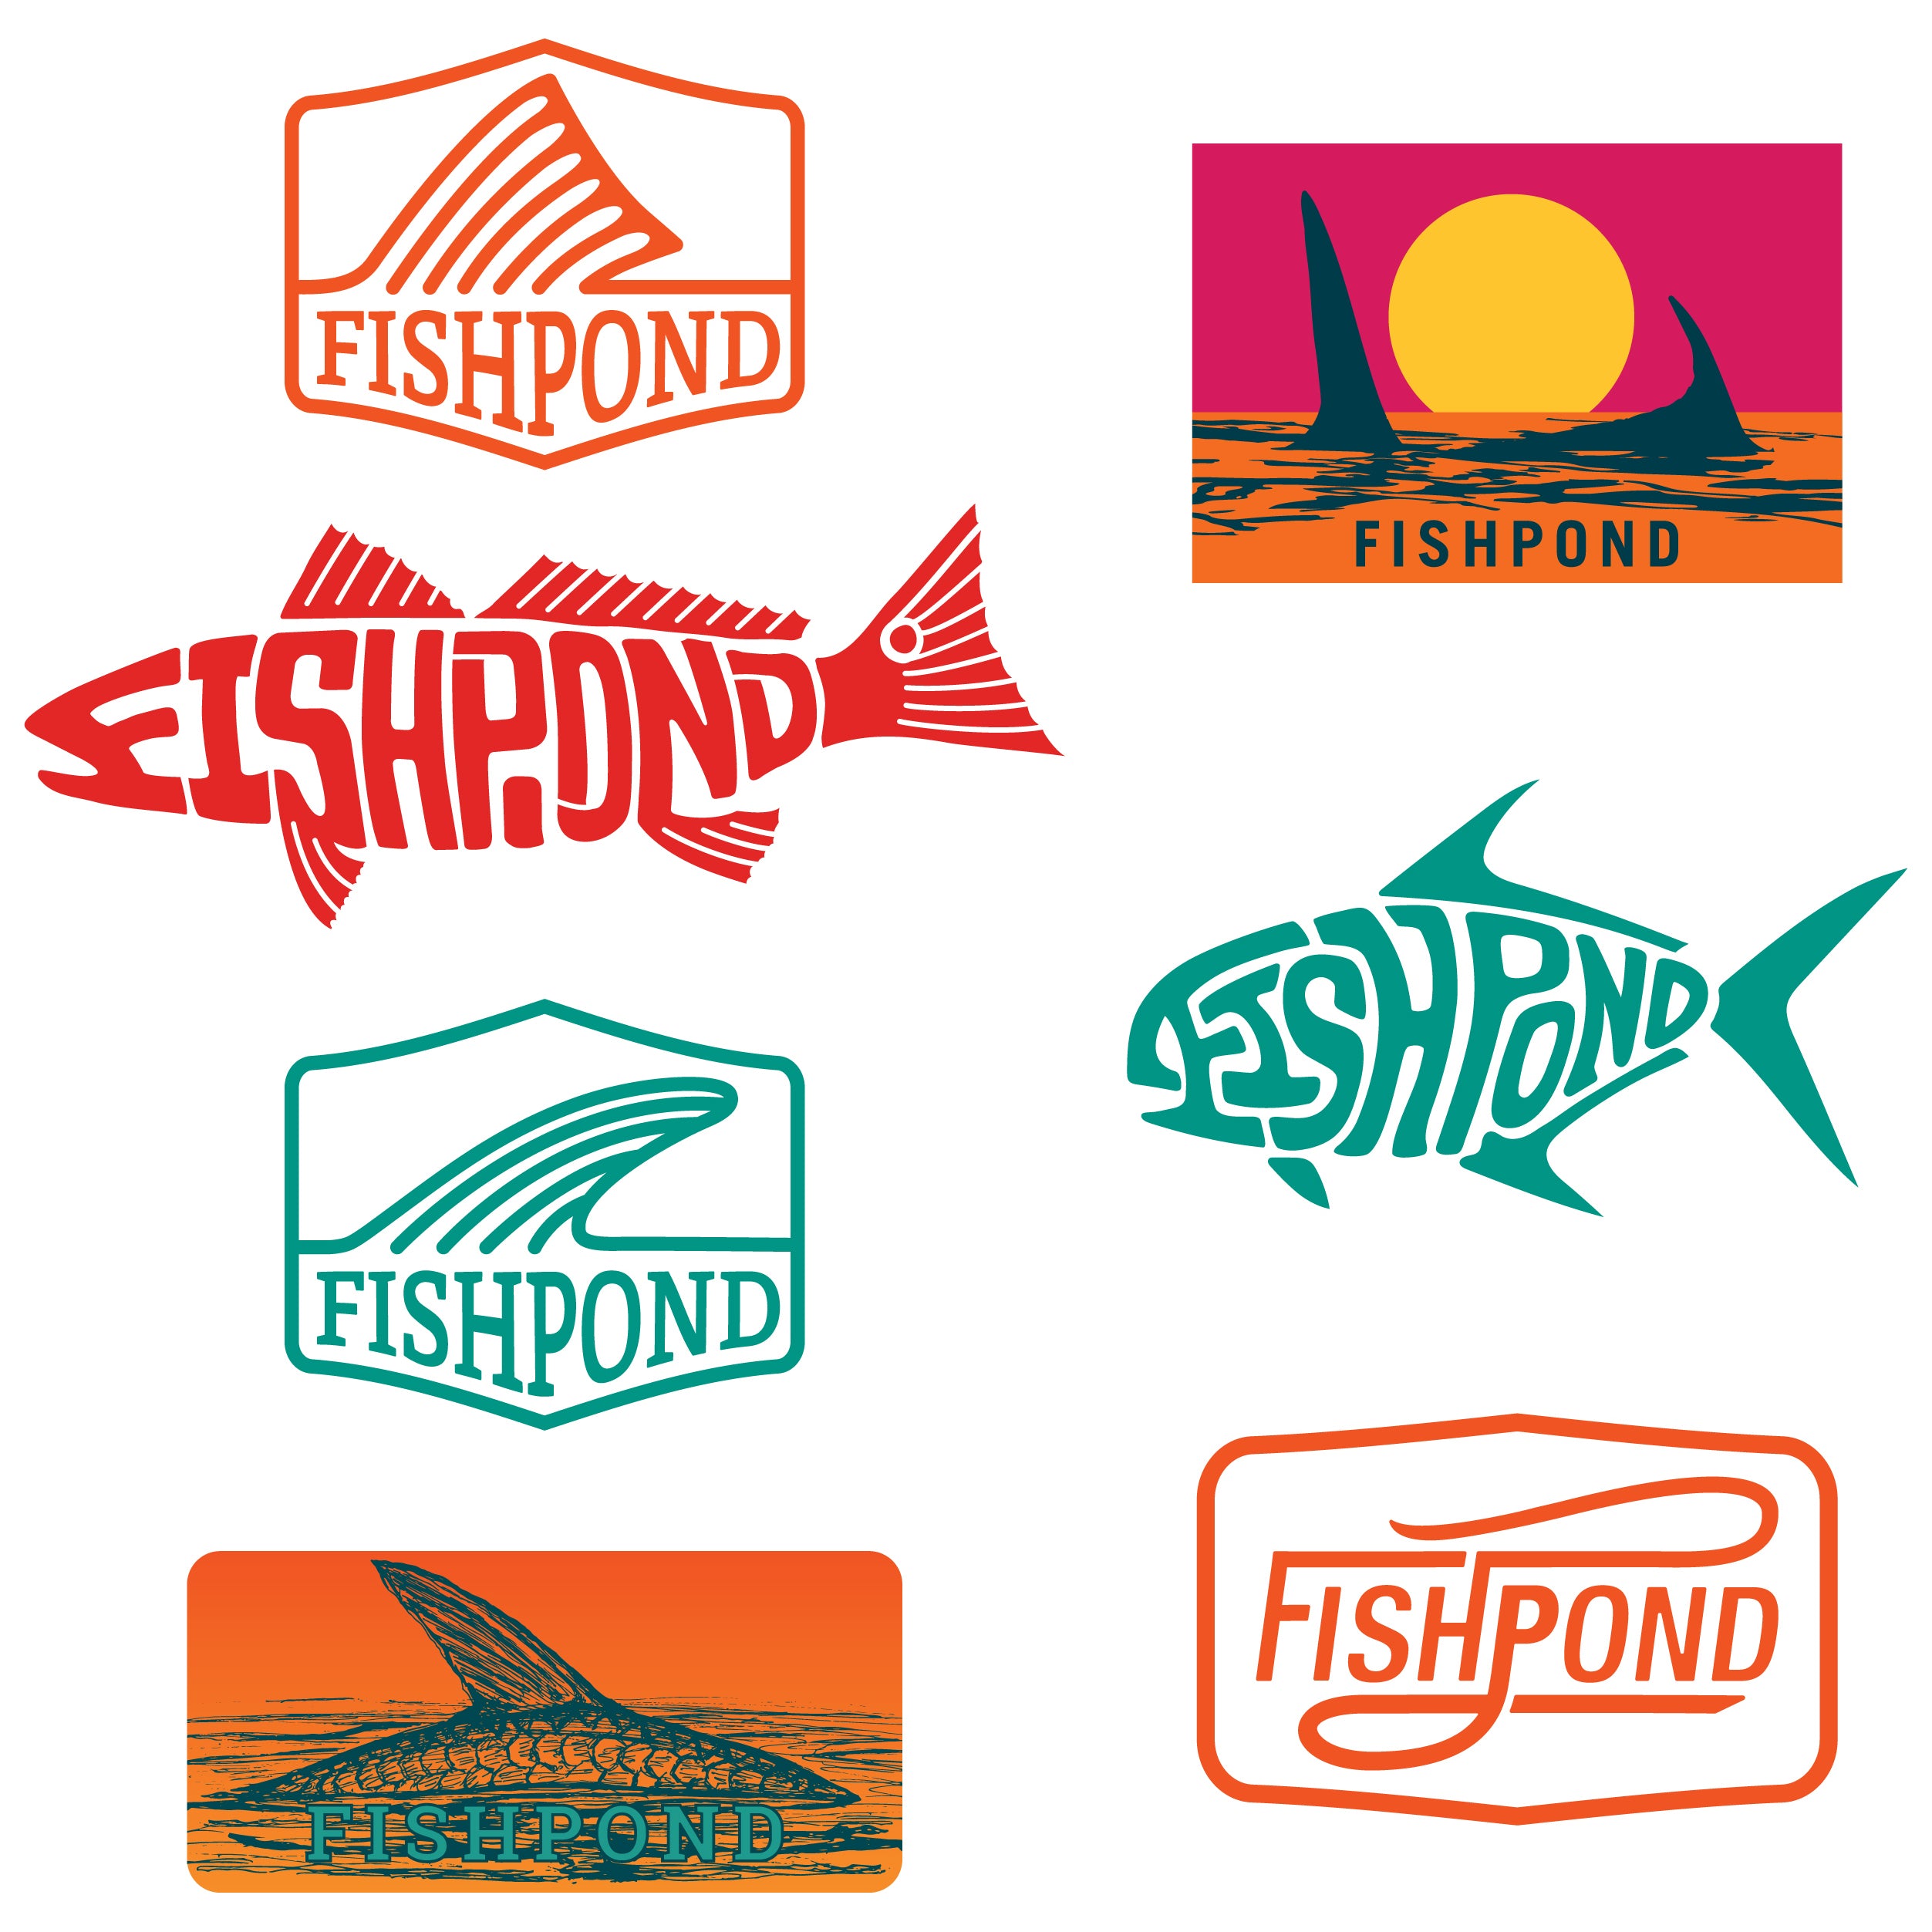 Fishpond Saltwater Sticker Bundle Image 01